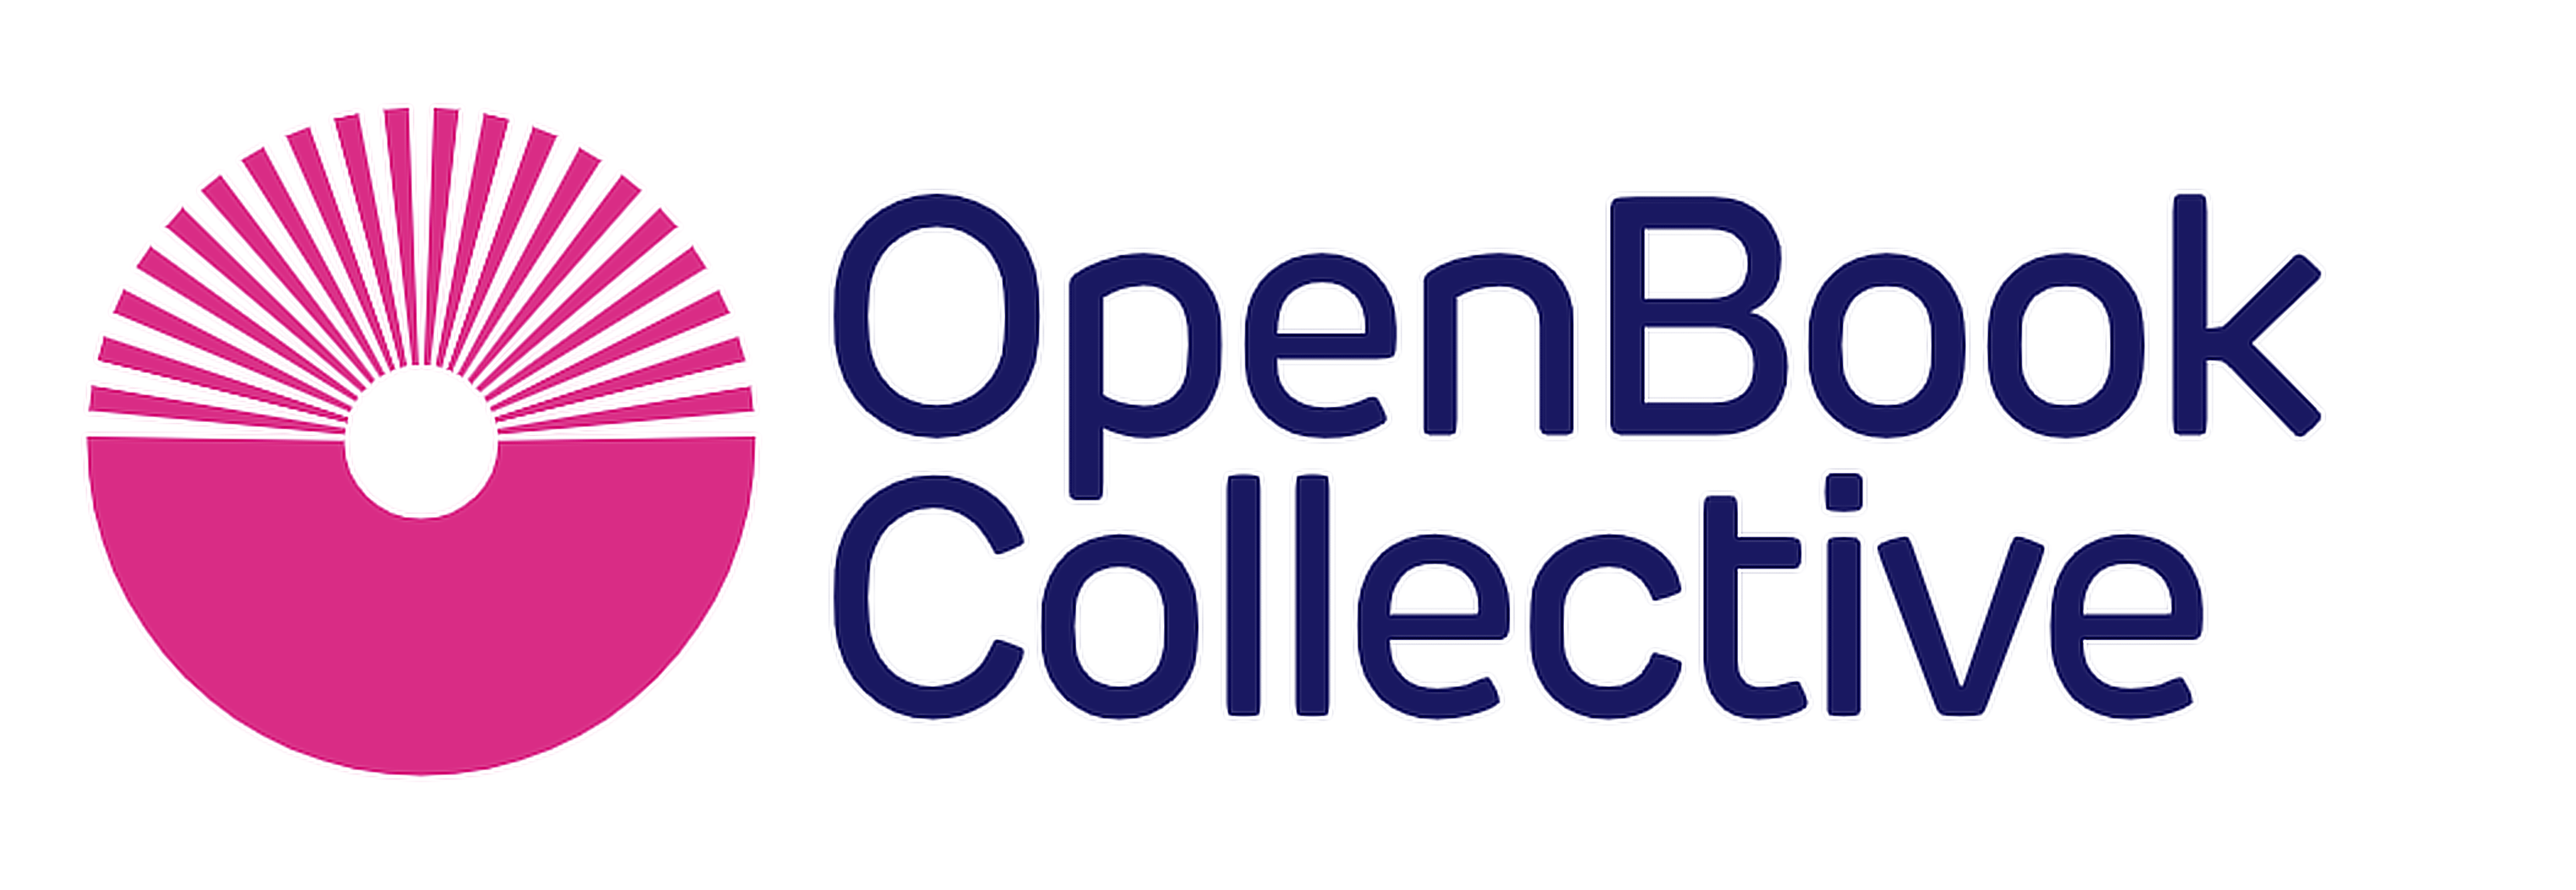 Open Book Collective logo